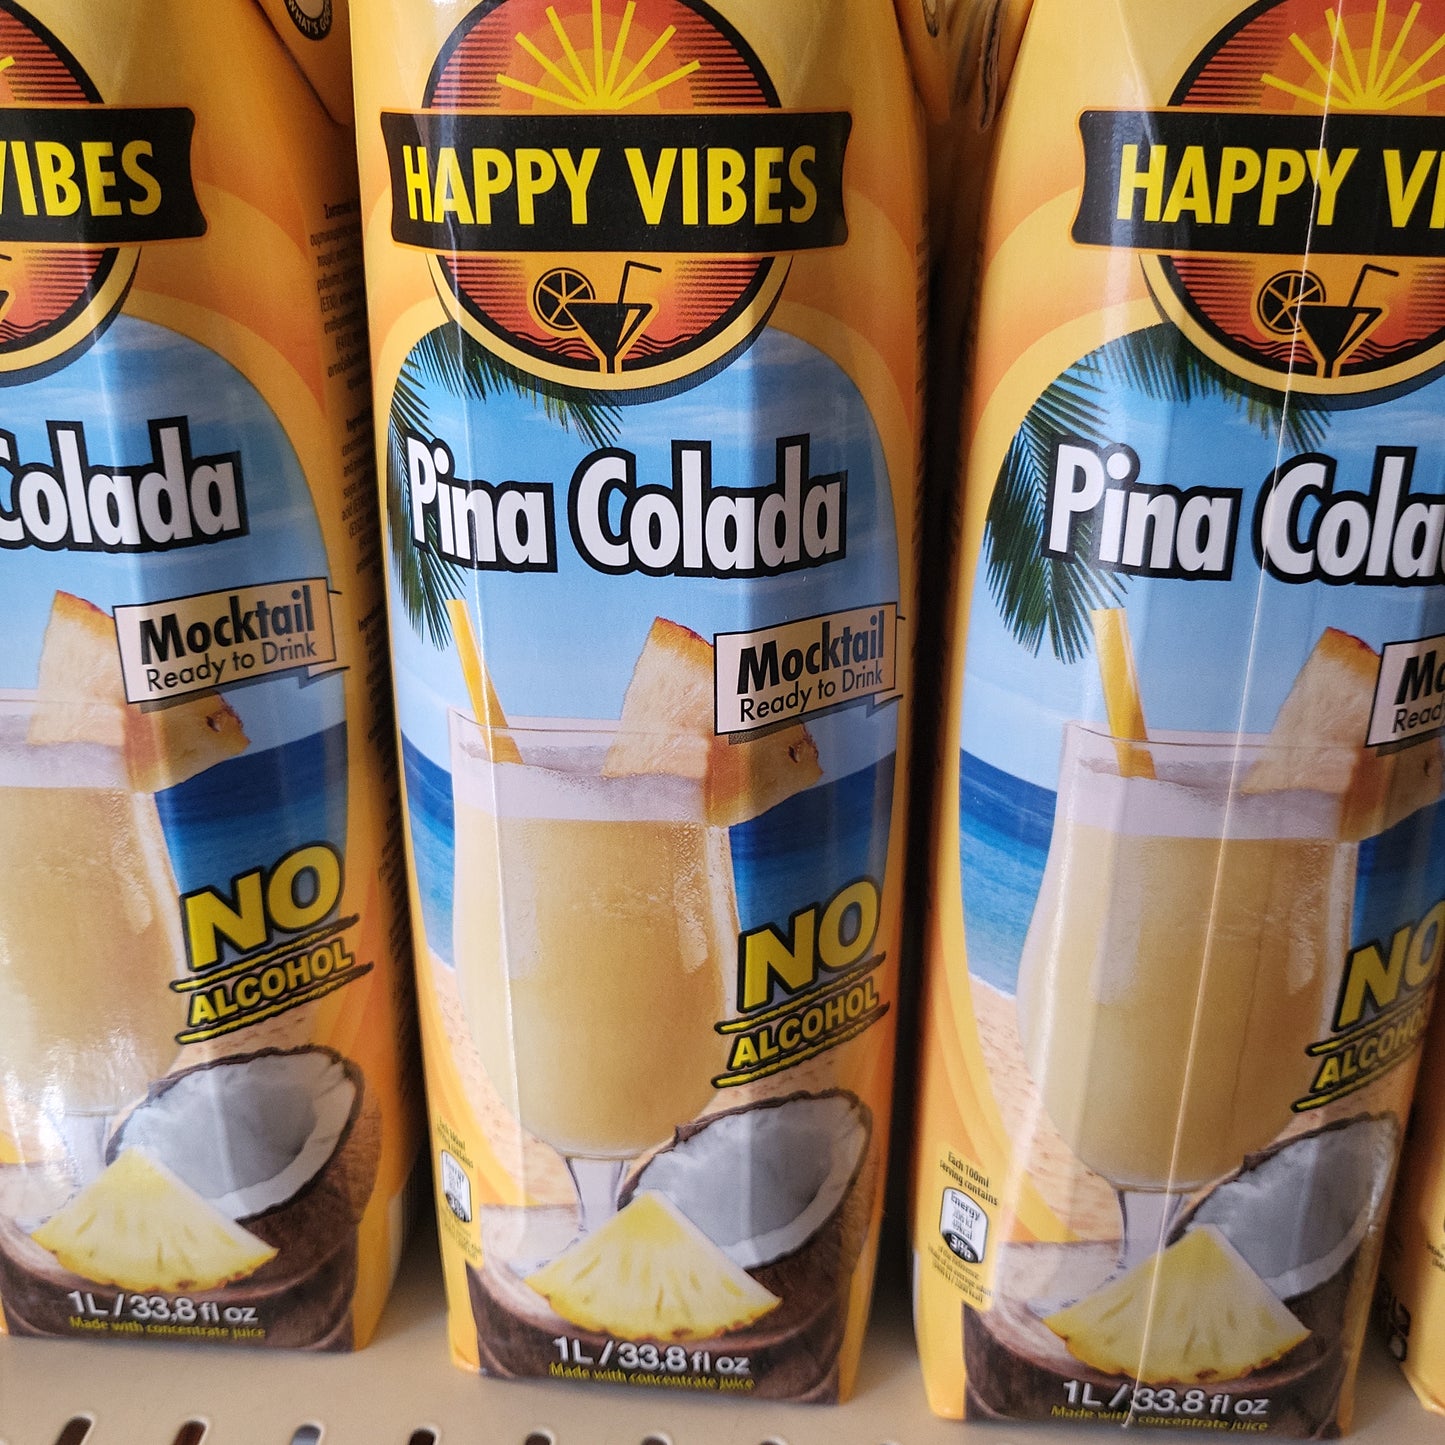 Pina Colada Happy Vibes